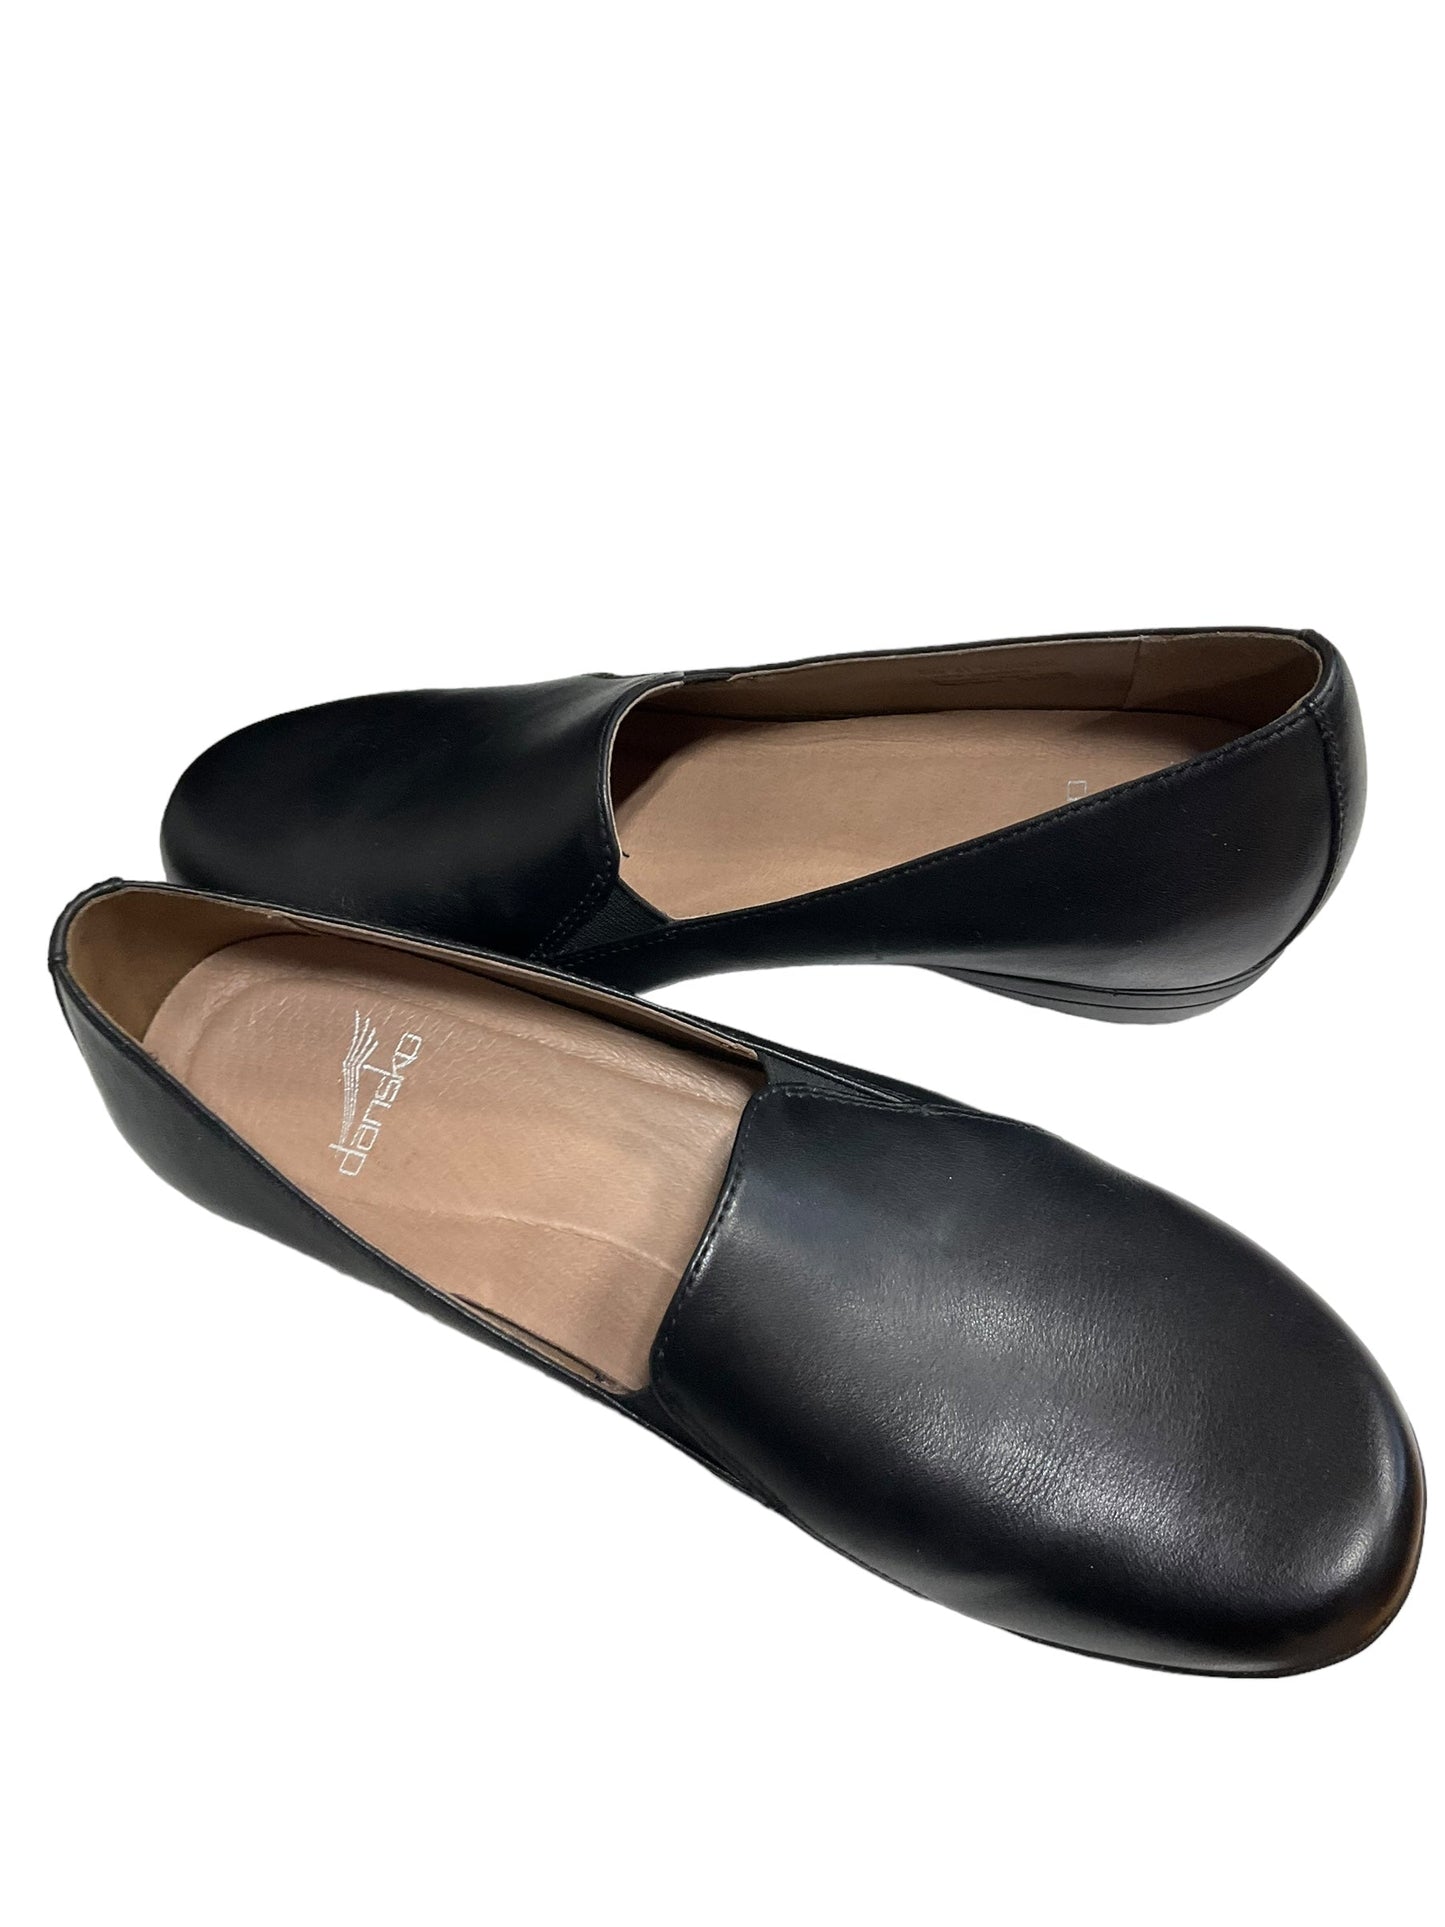 Black Shoes Heels Wedge Dansko, Size 10